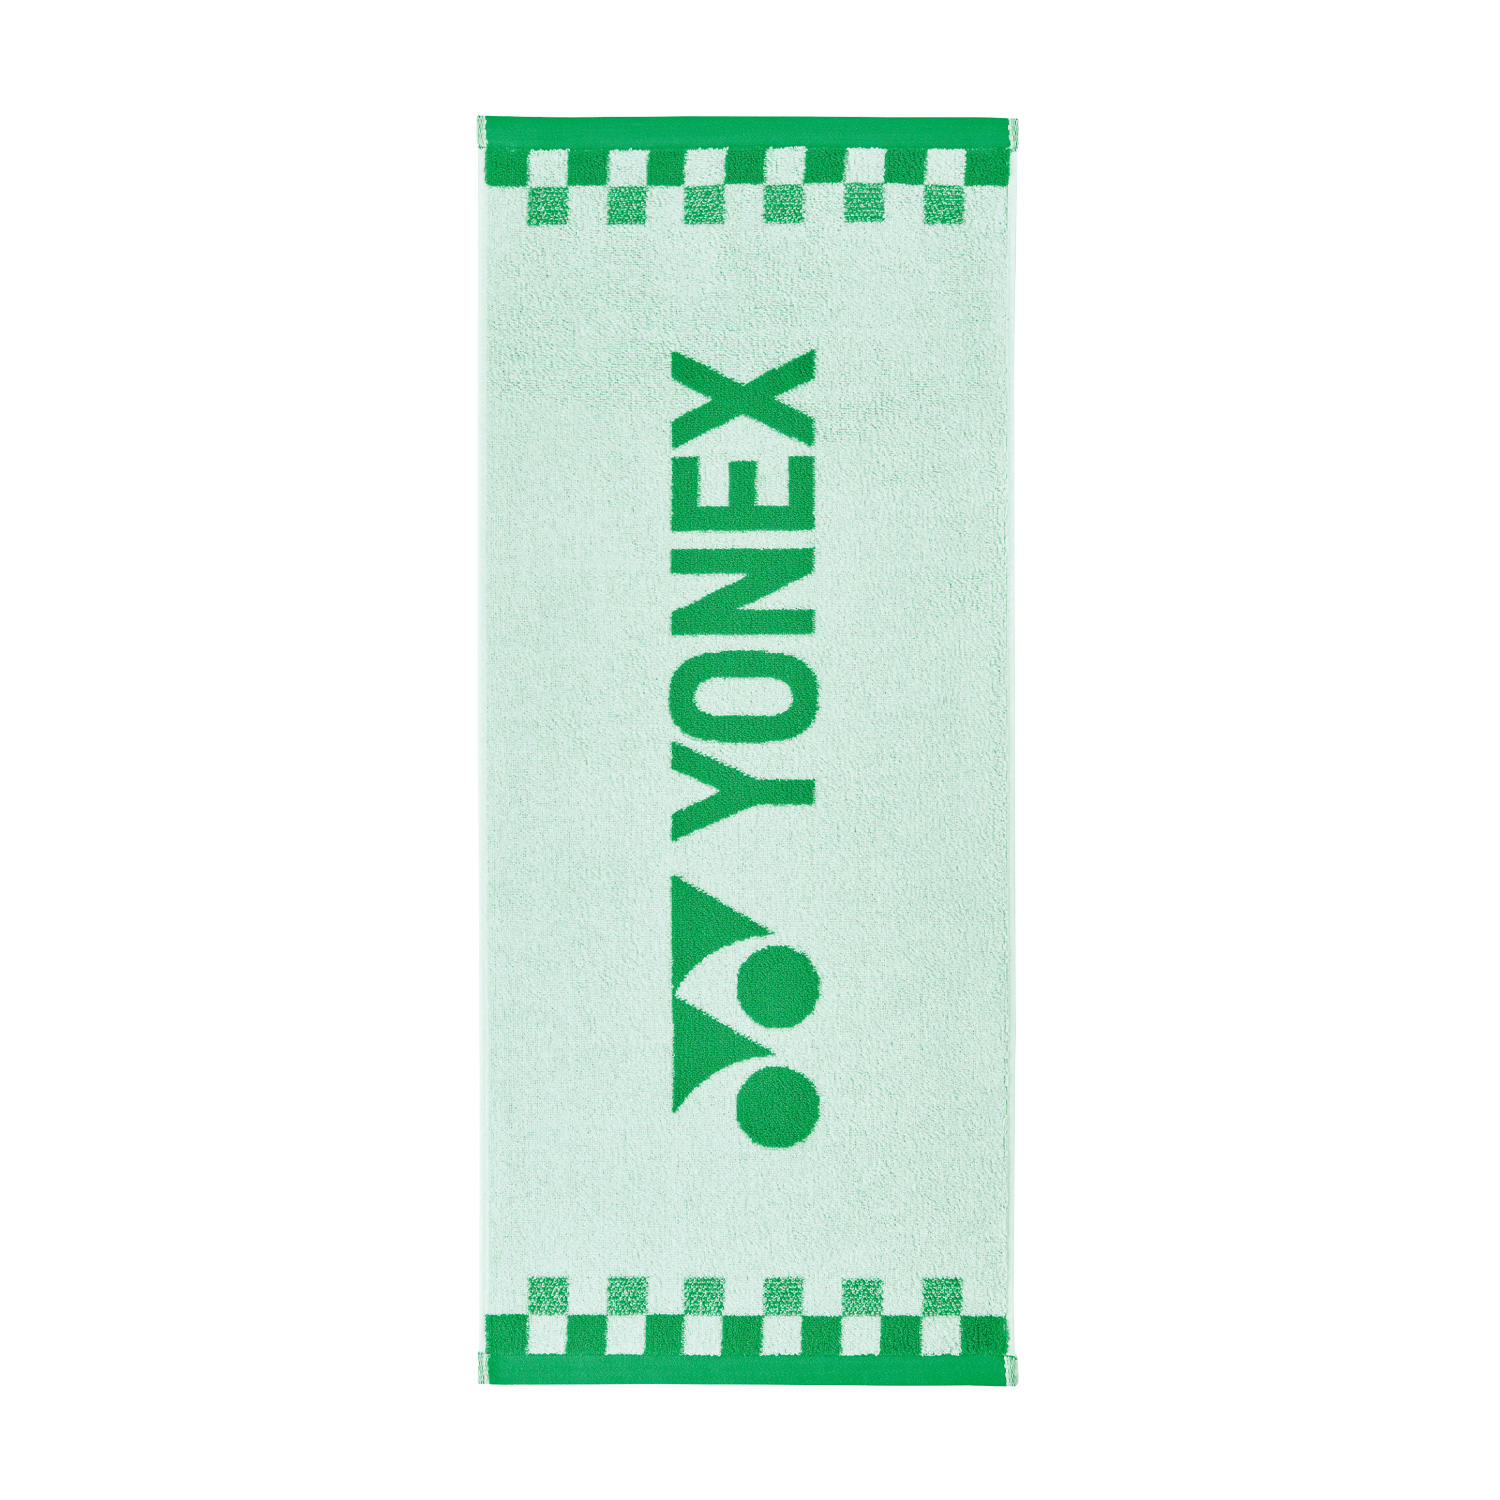 Yonex Pro Hand Towel - White